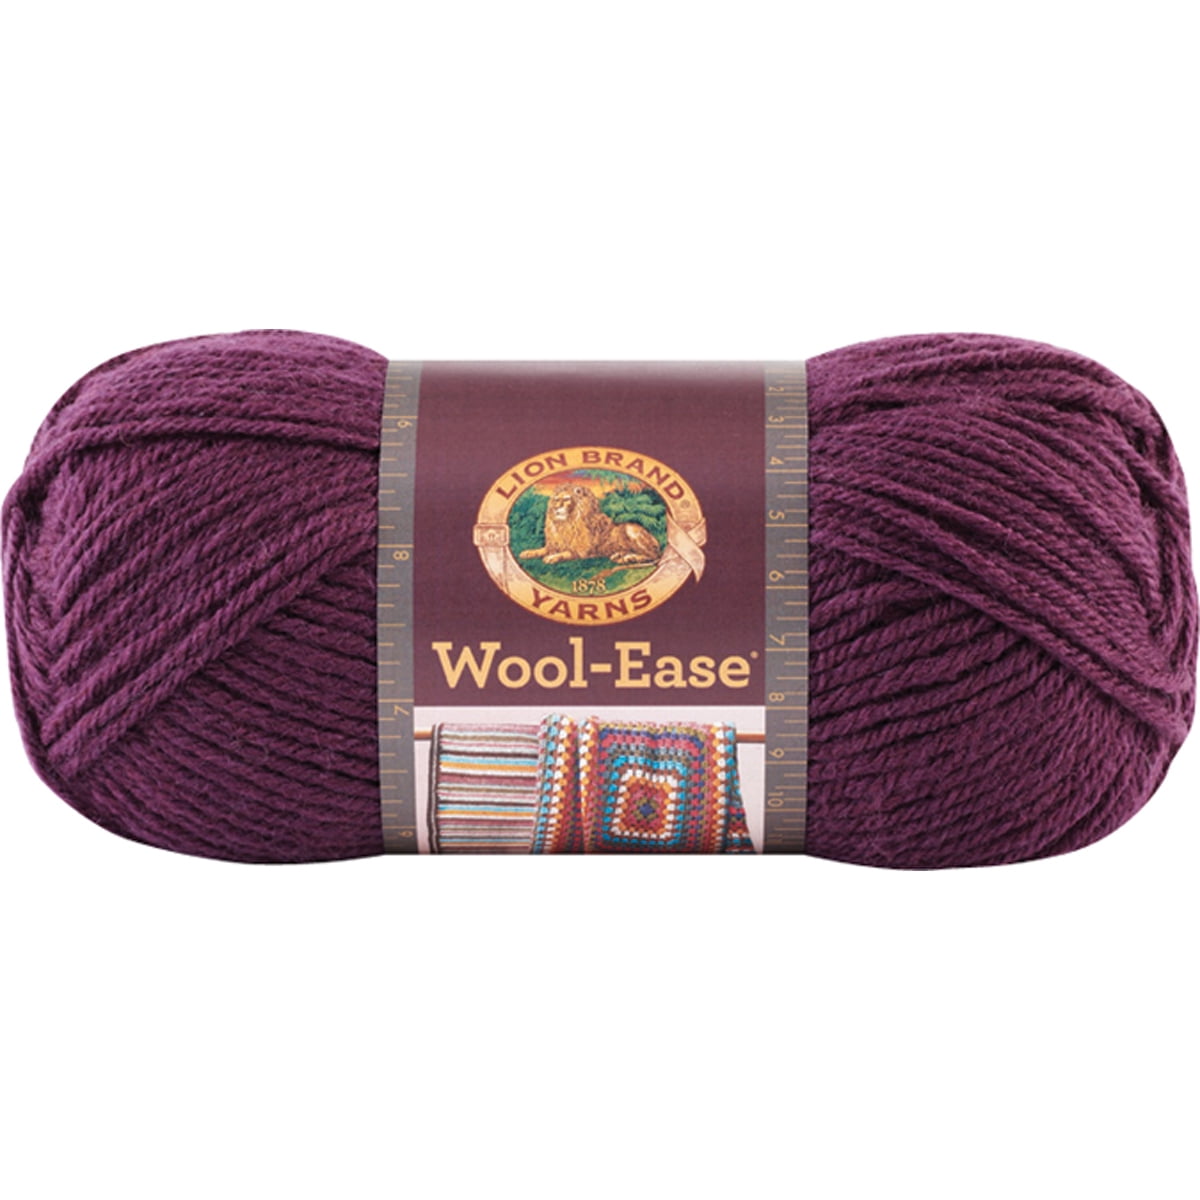 Lion Brand Yarn Wool Ease Fair Isle Yarn, Denim/Lilac